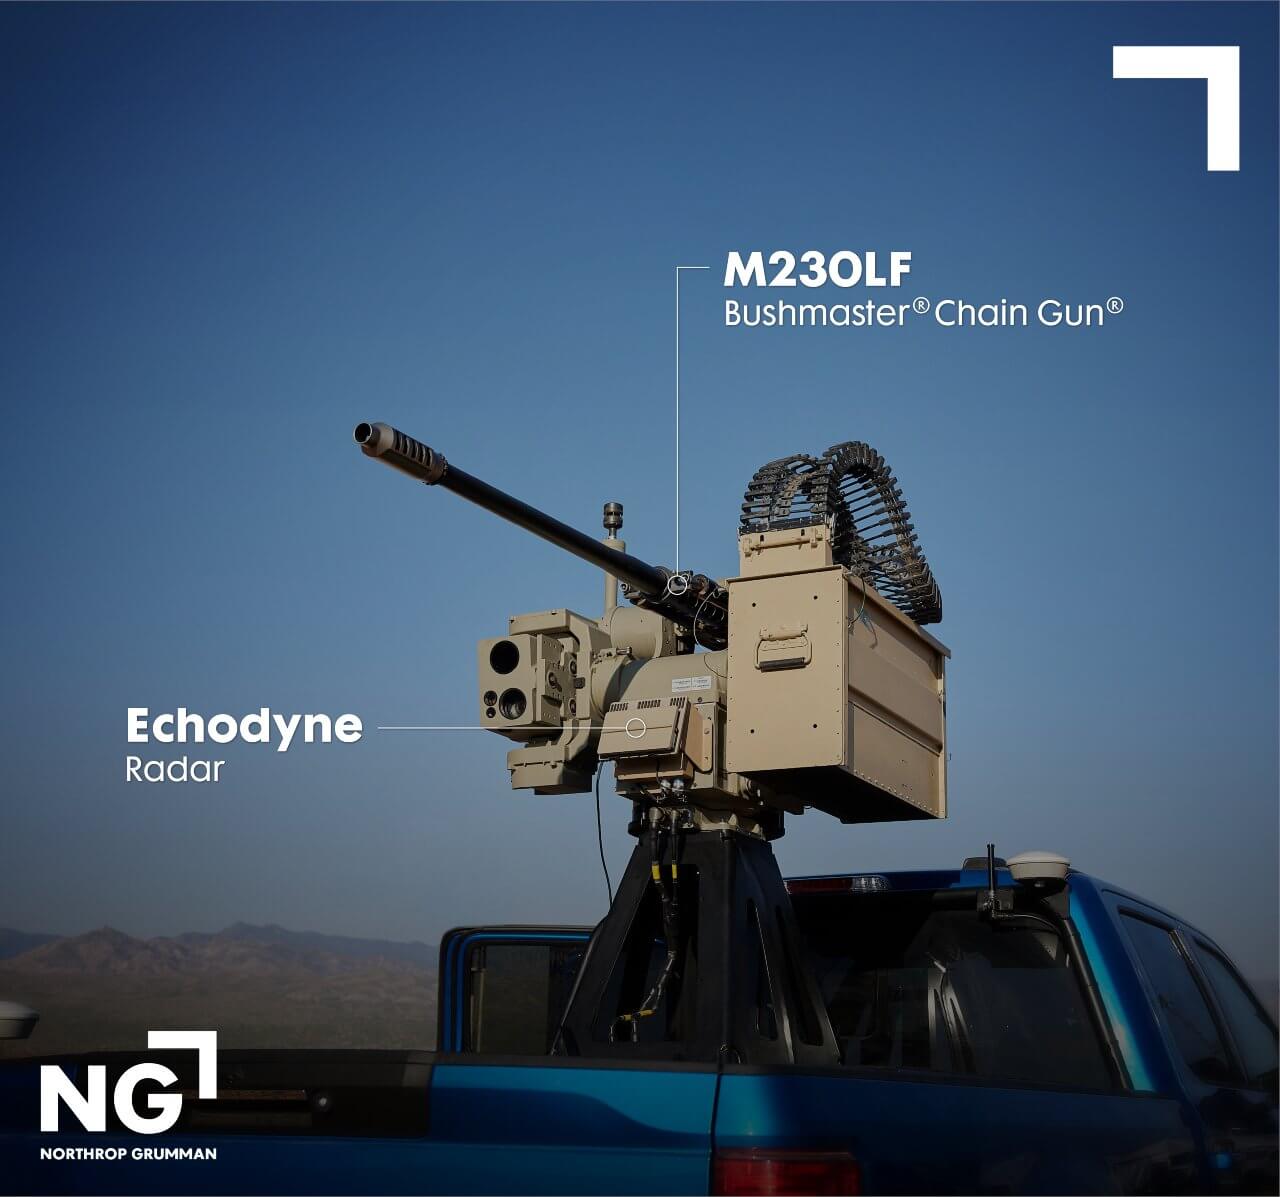 The Echodyne EchoGuard MESA 3D radar array